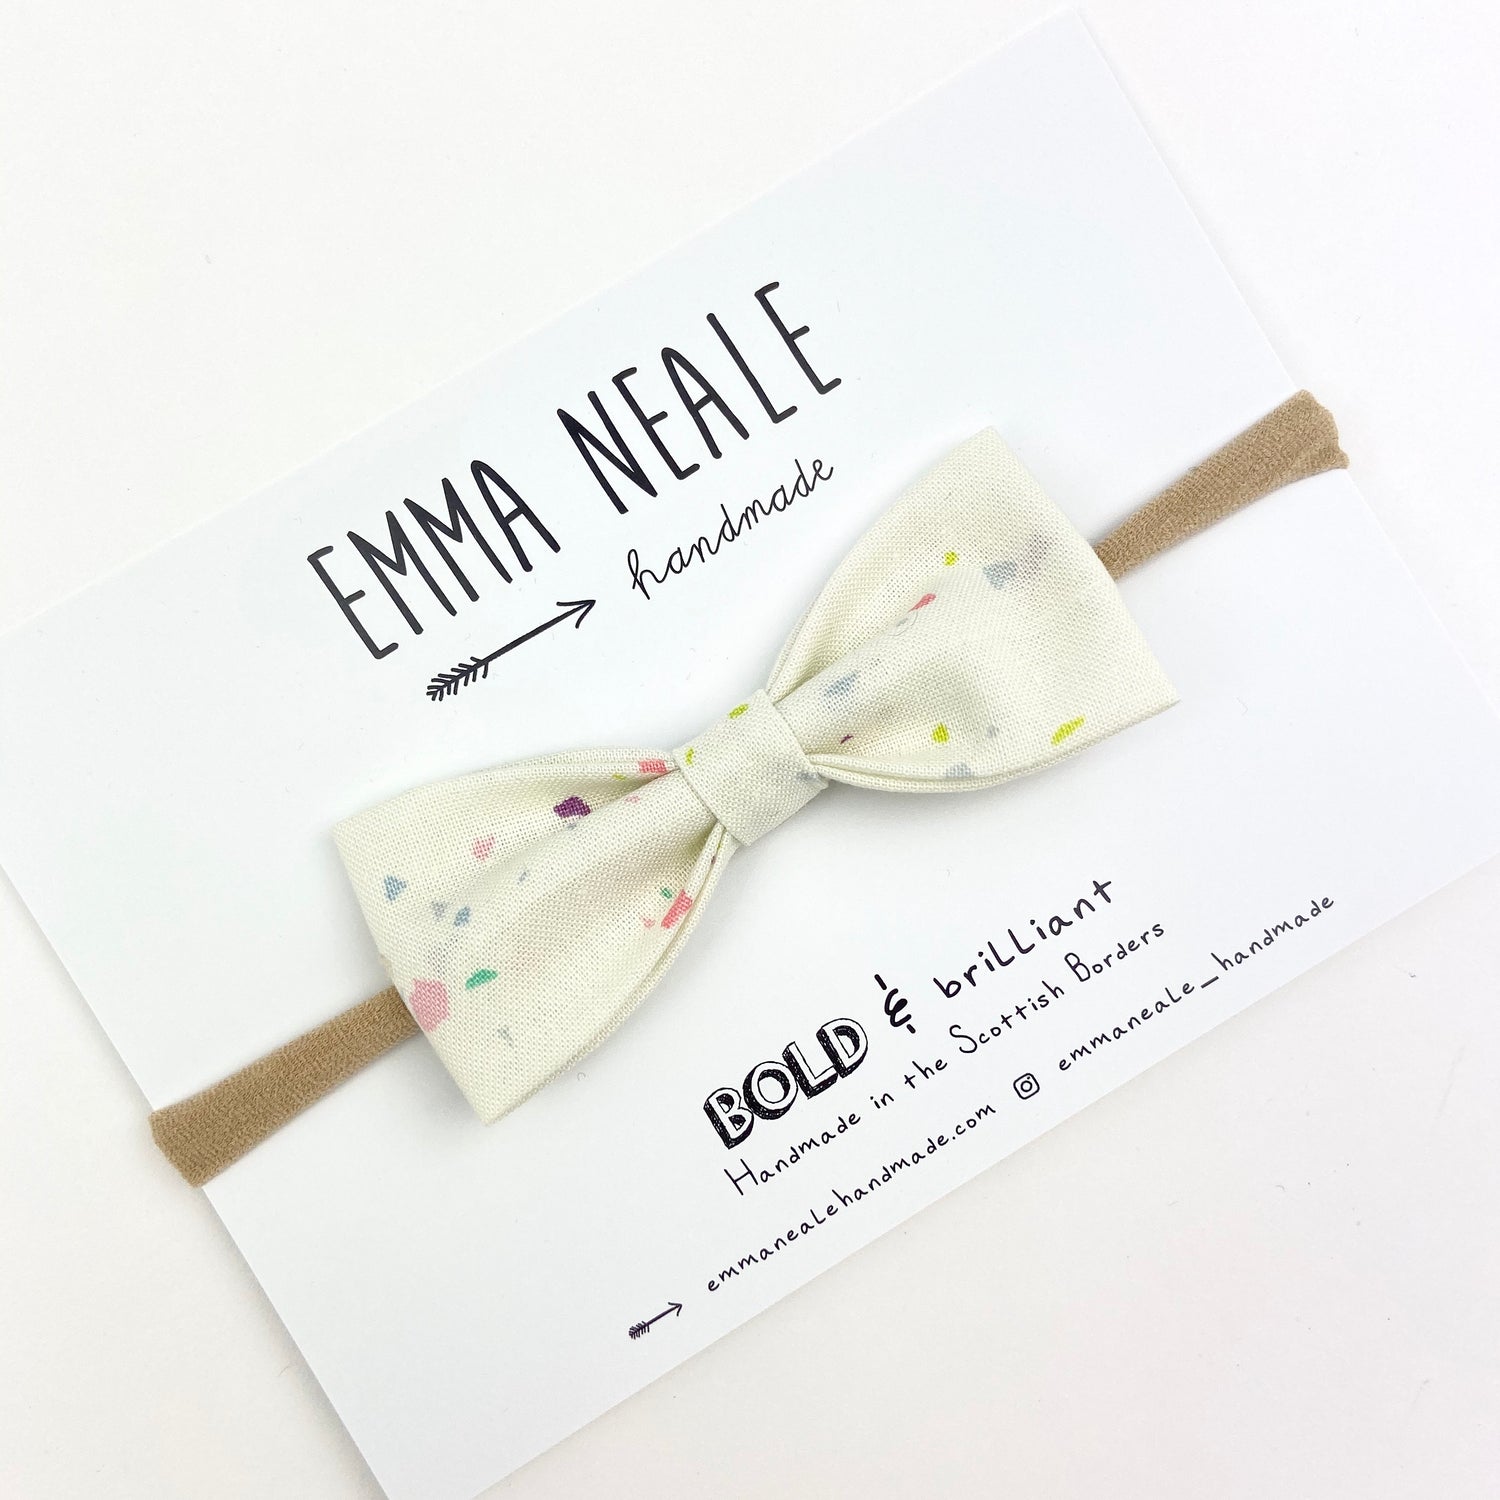 Confetti Ruby Bow Headband - Emma Neale Handmade